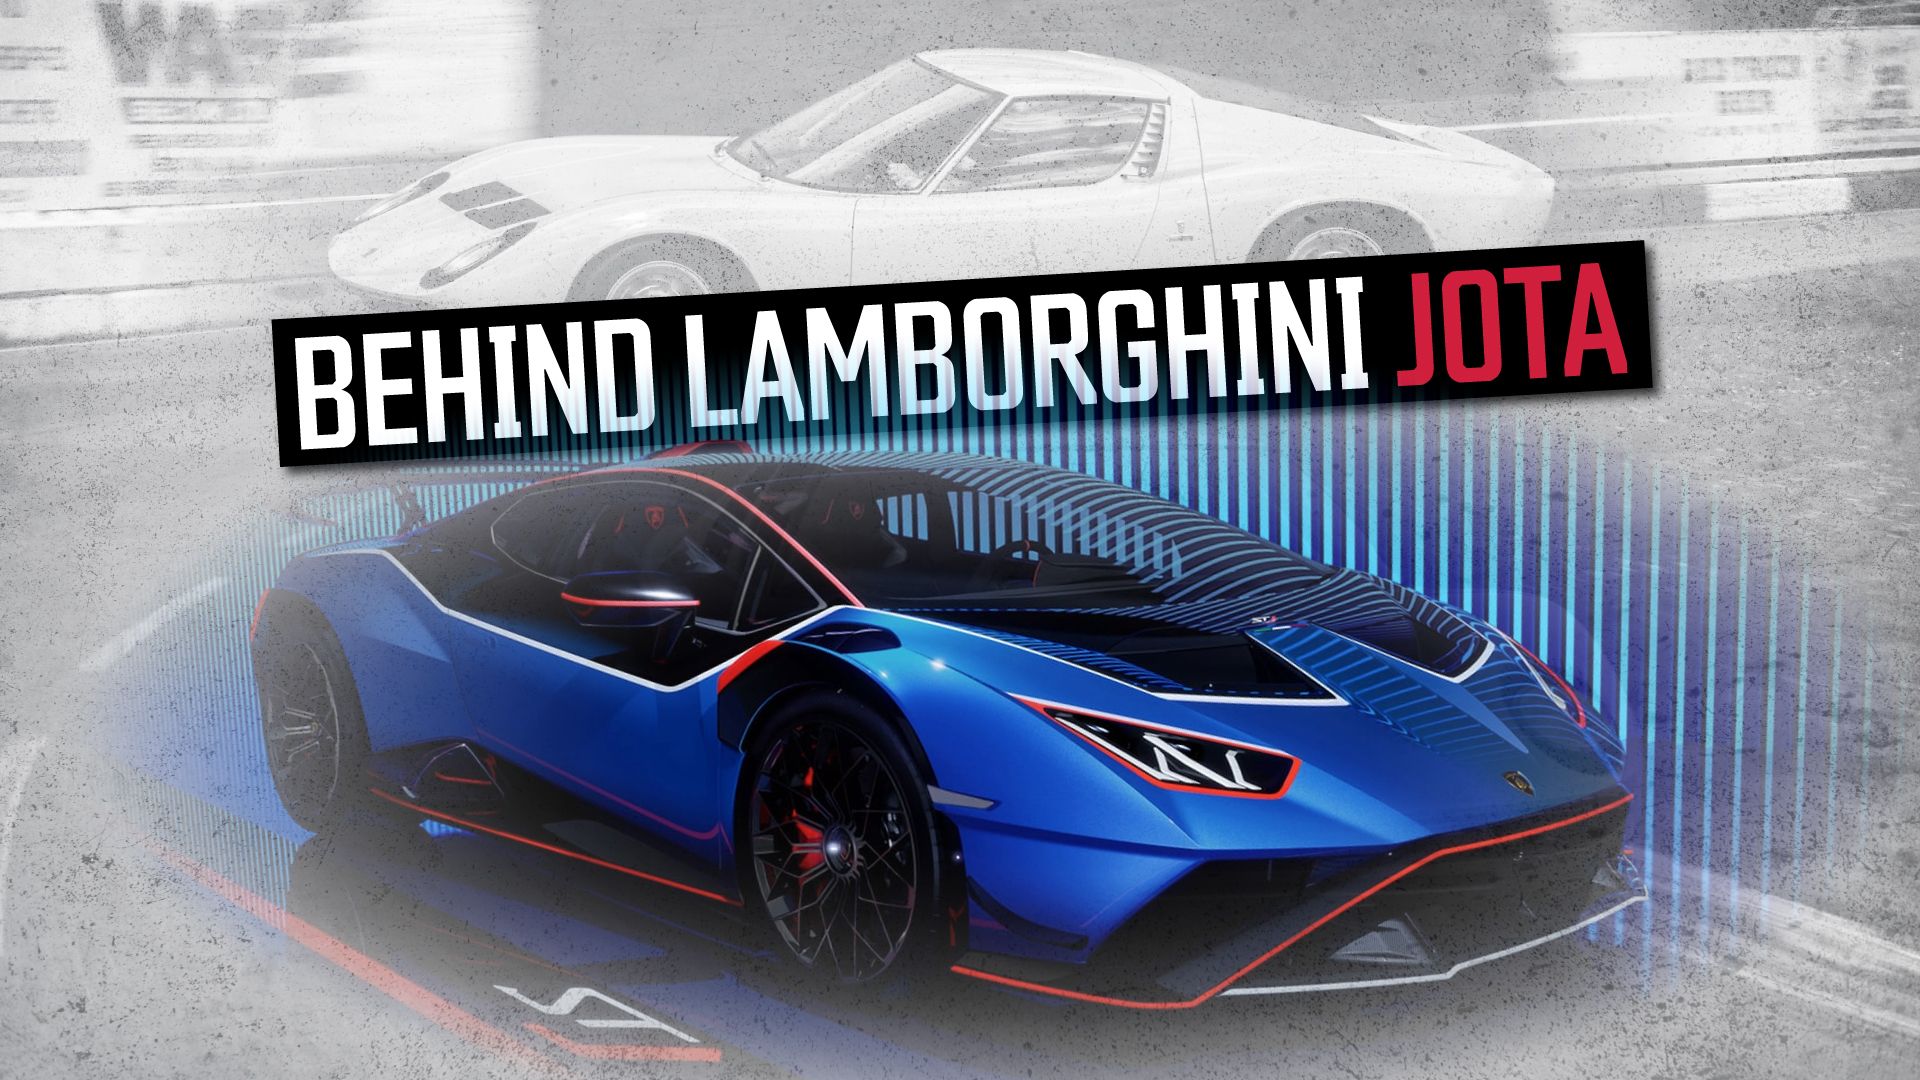 Behind-Lamborghini-Jota